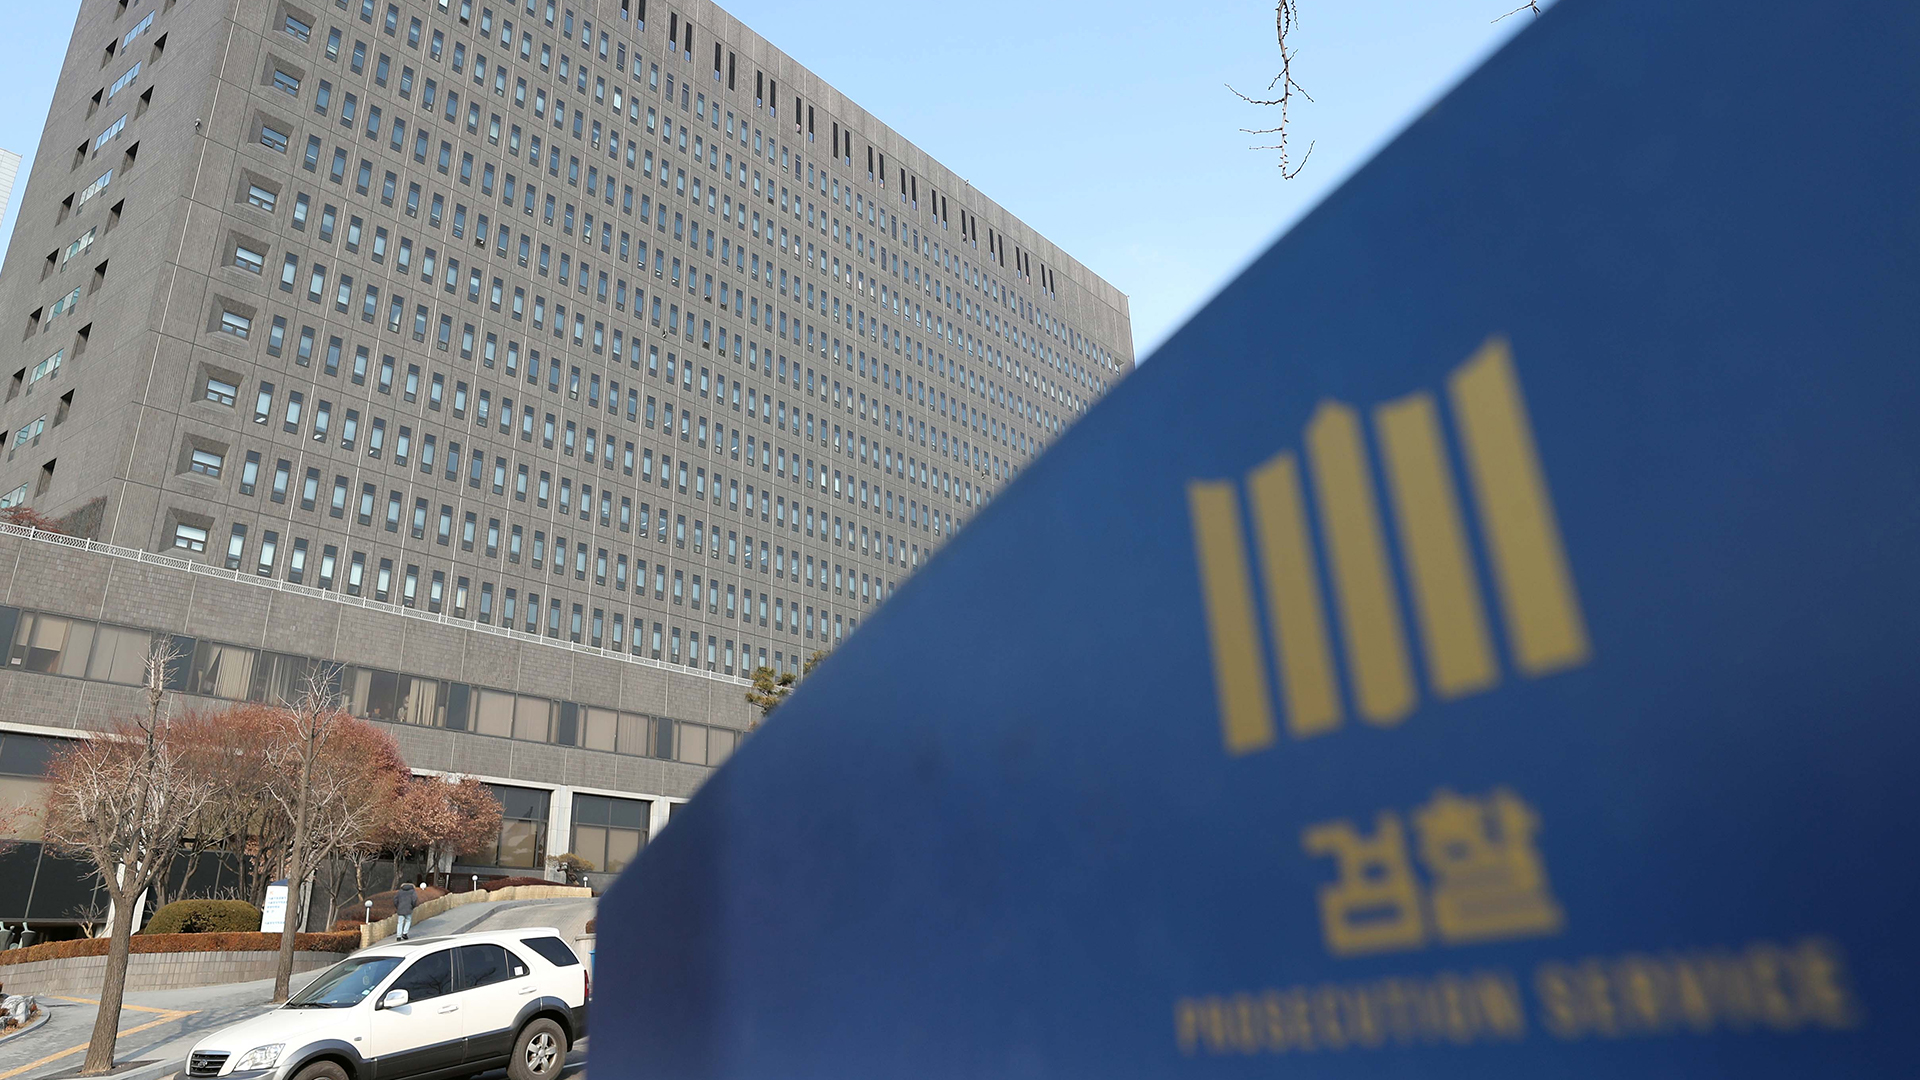 [와이파일]관용차에 숨겨진 검찰 개혁의 민낯